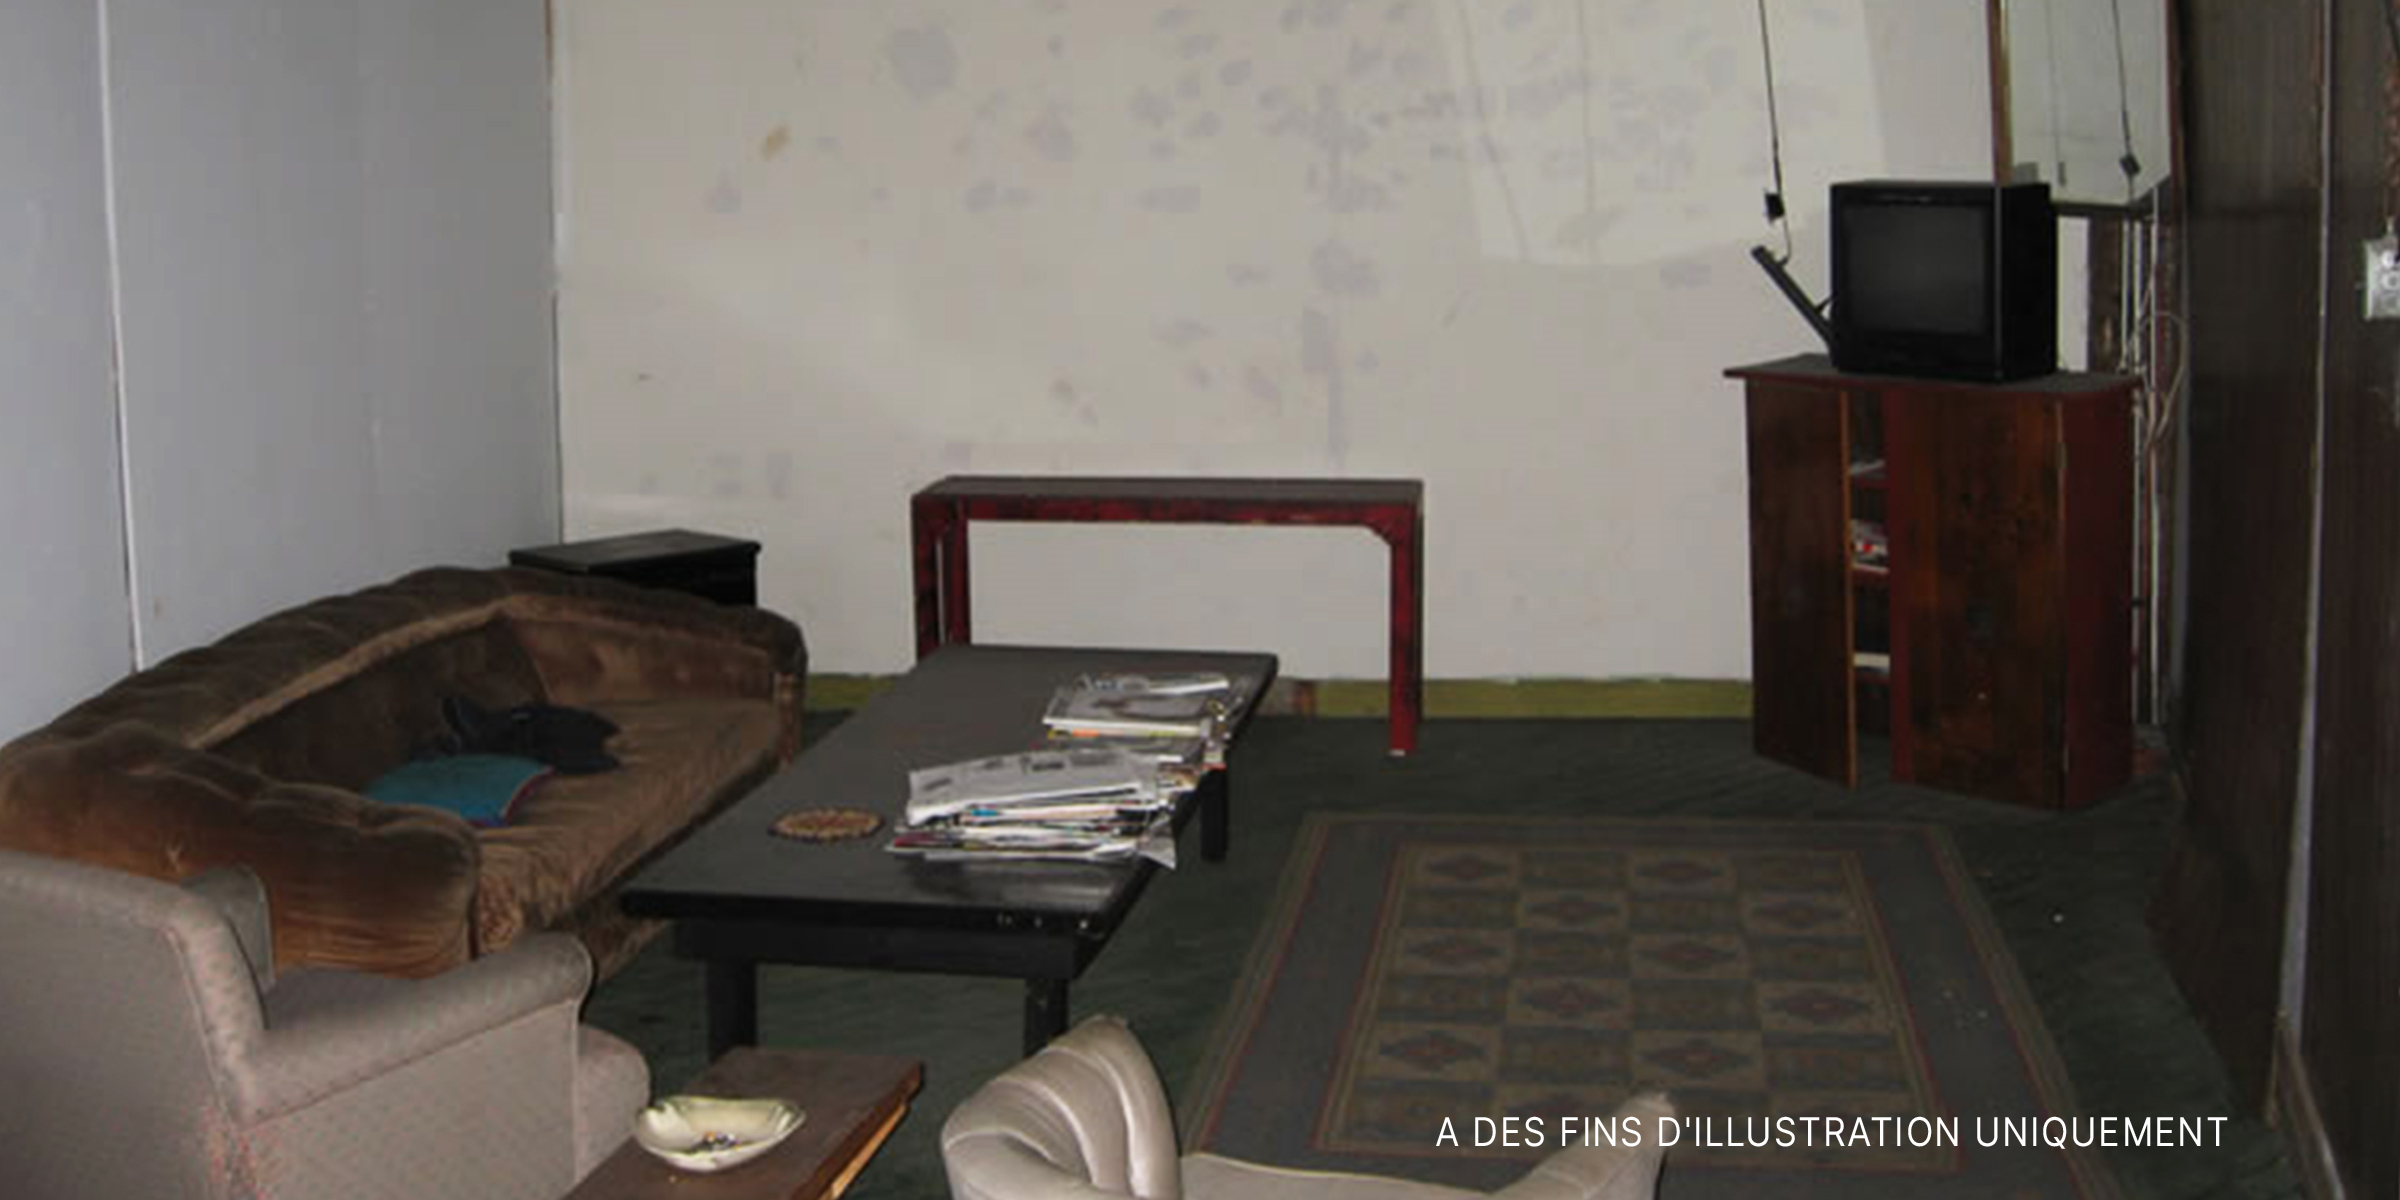 Des meubles de salon bien rangés dans une pièce en sous-sol | Source : Flickr / Apparent (CC BY 2.0)